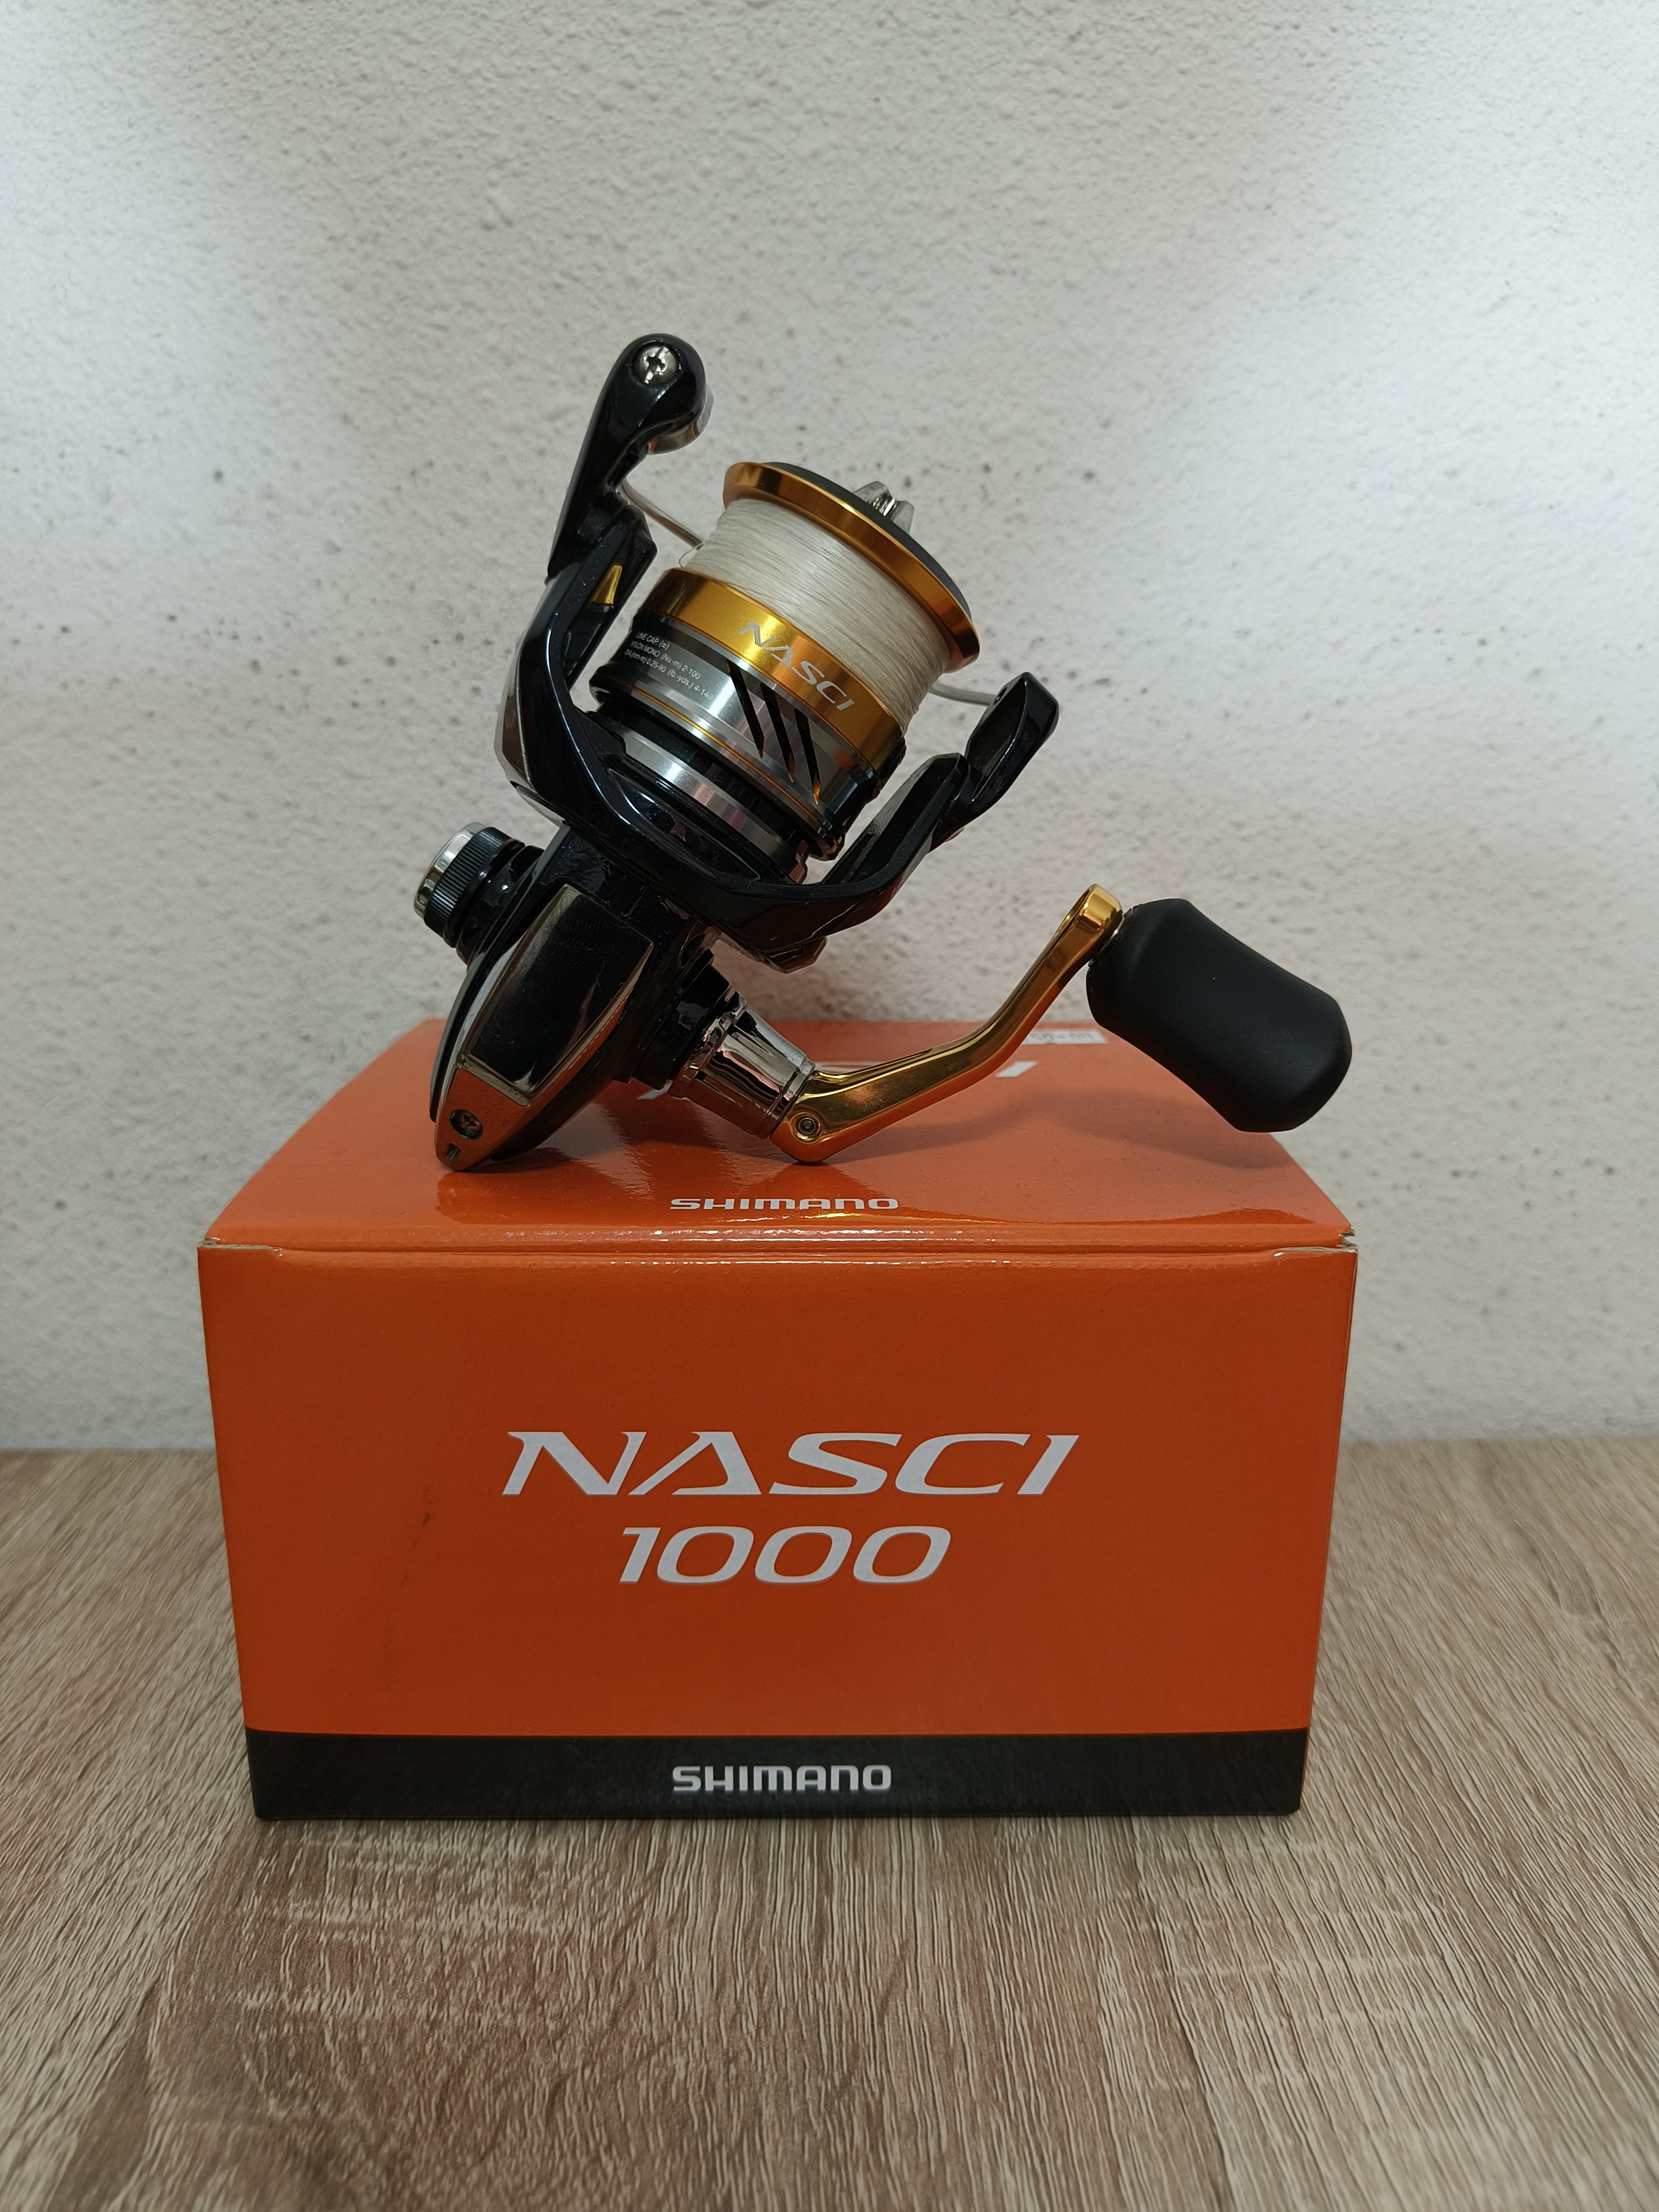 Shimano Nasci 1000 (2016 Model)